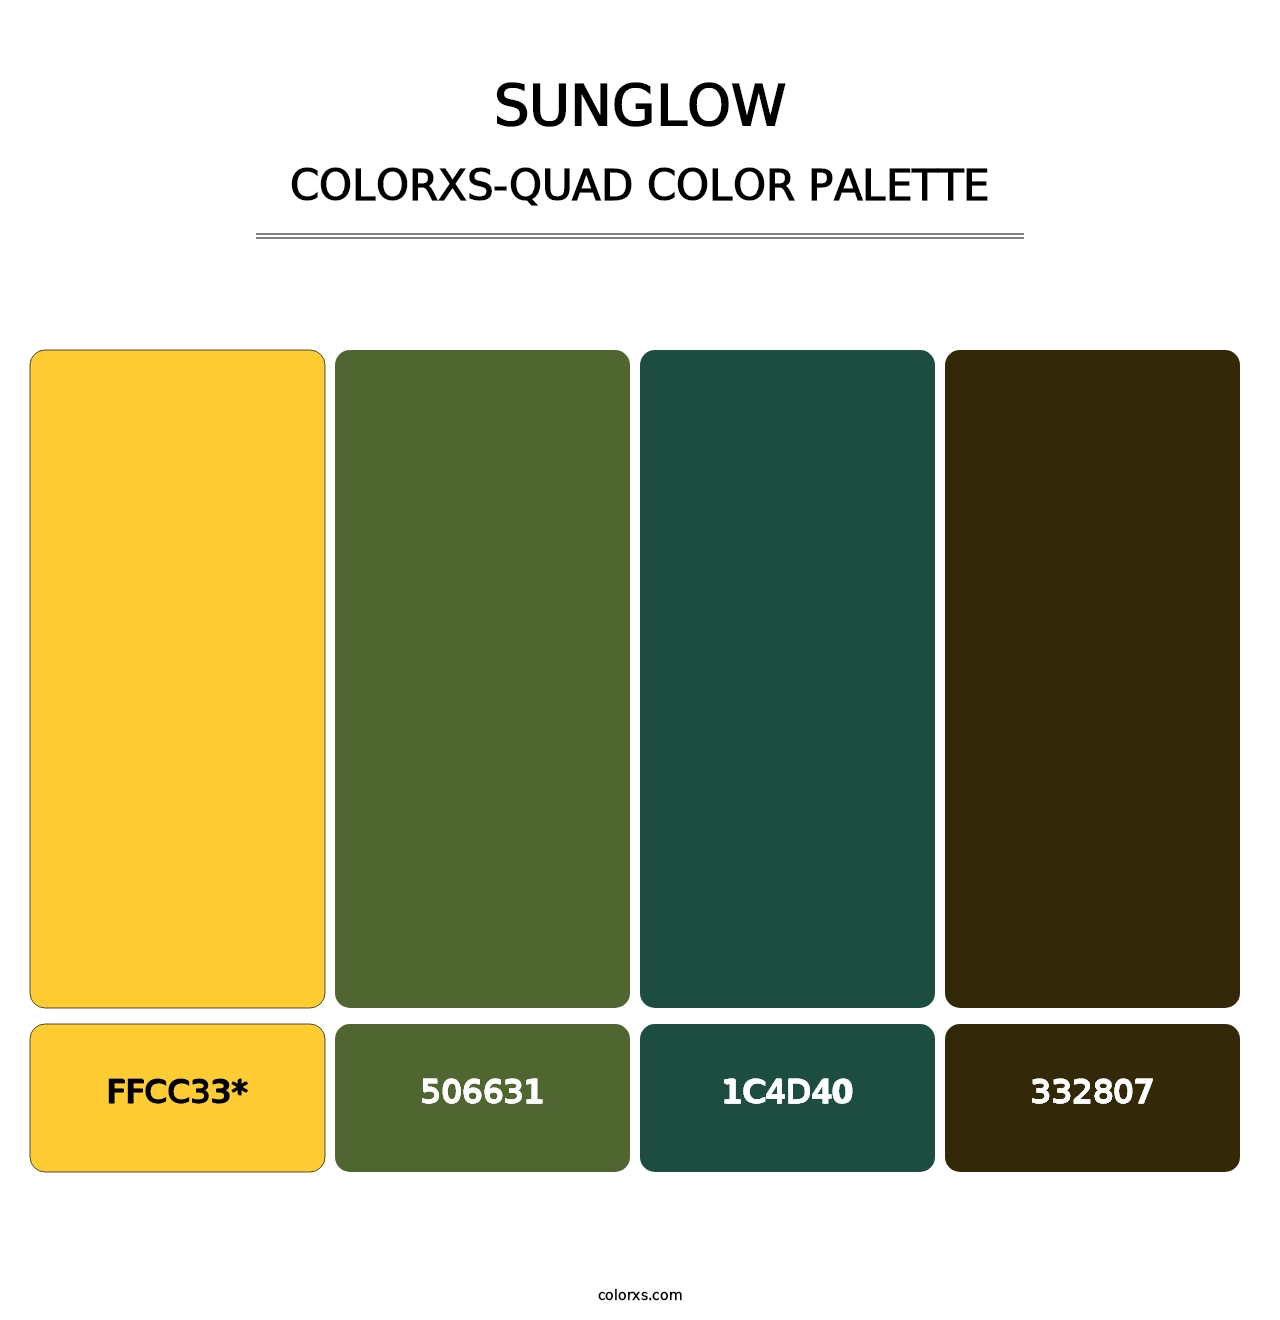 Sunglow - Colorxs Quad Palette